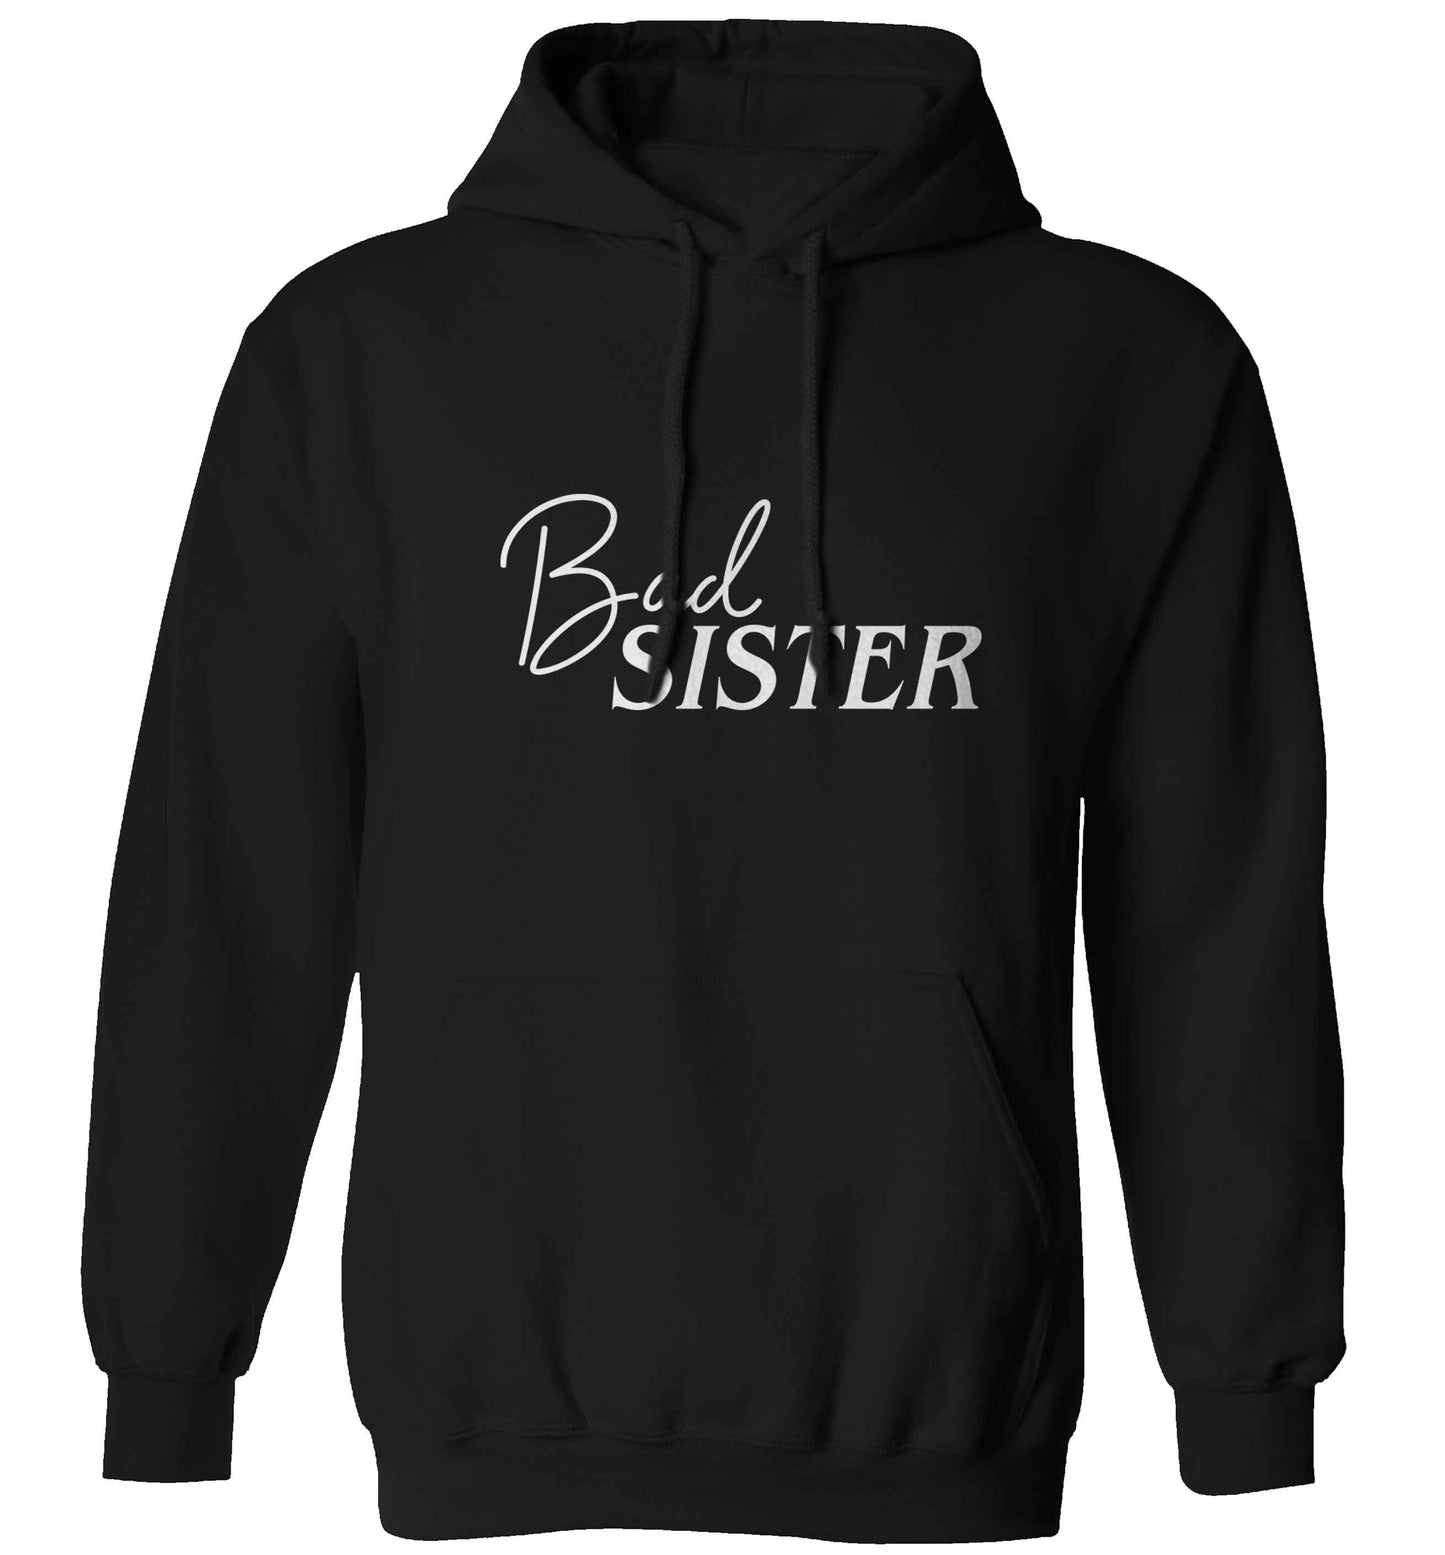 Bad sister adults unisex black hoodie 2XL